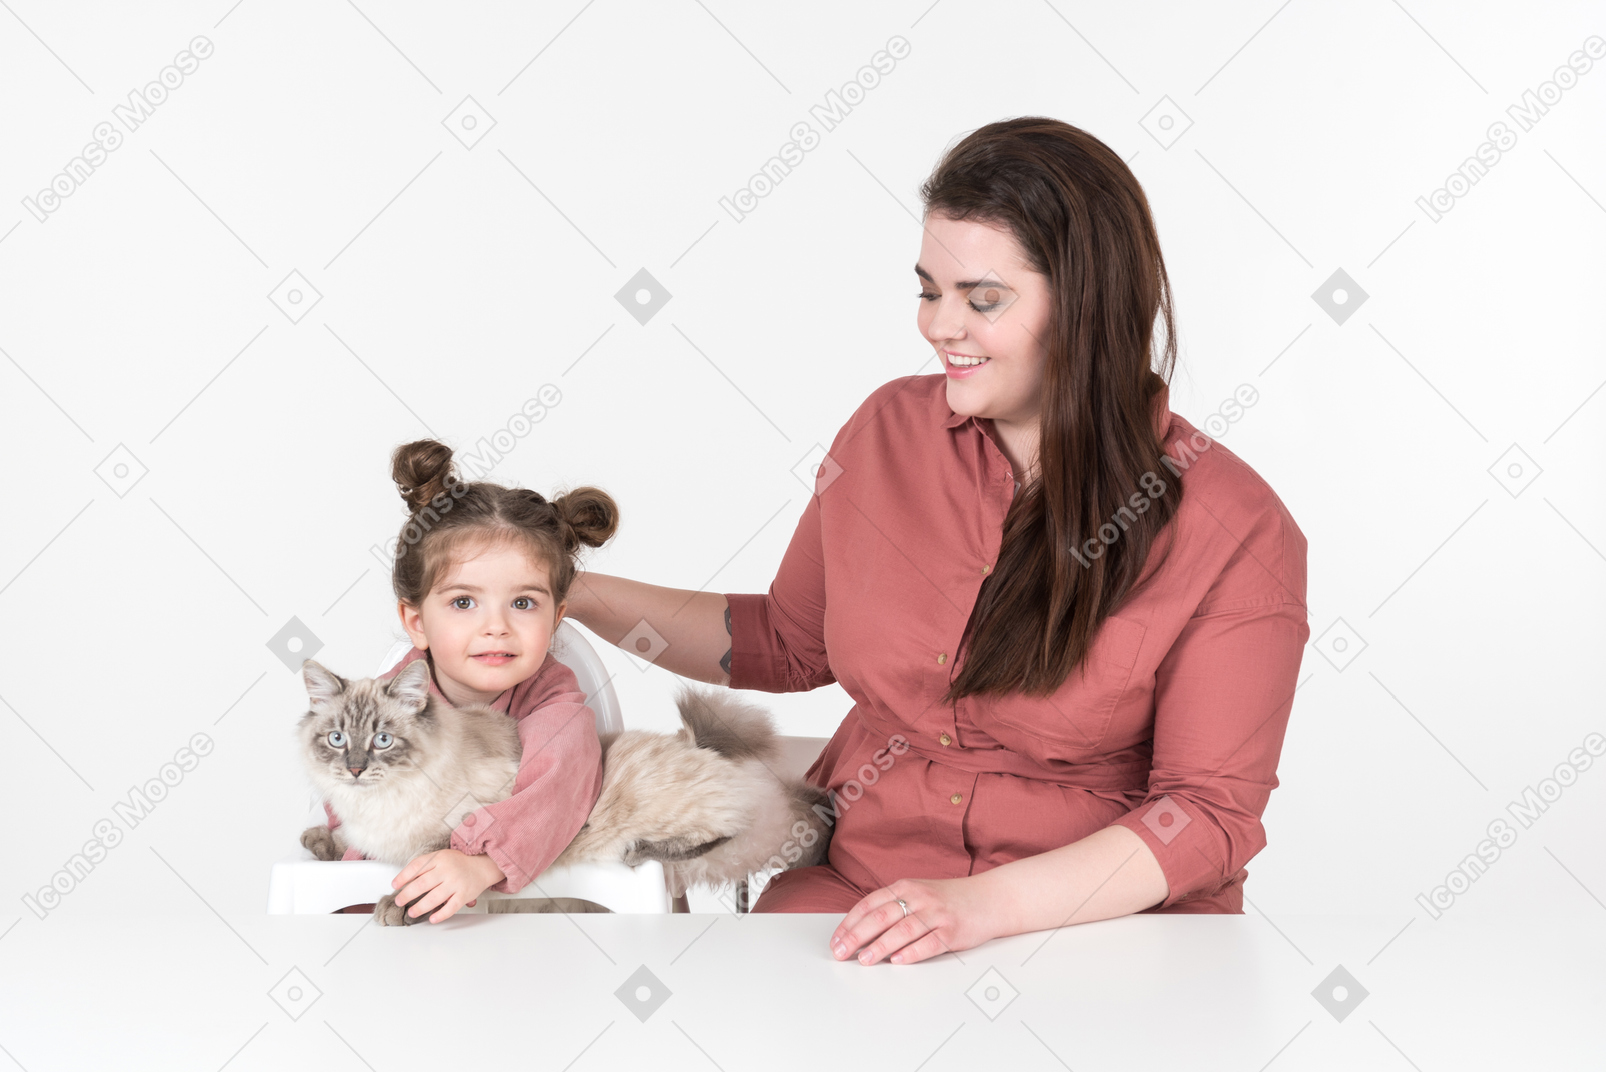 Madre y su pequeña hija, vestidas de rojo y rosa, sentadas a la mesa con su gato familiar